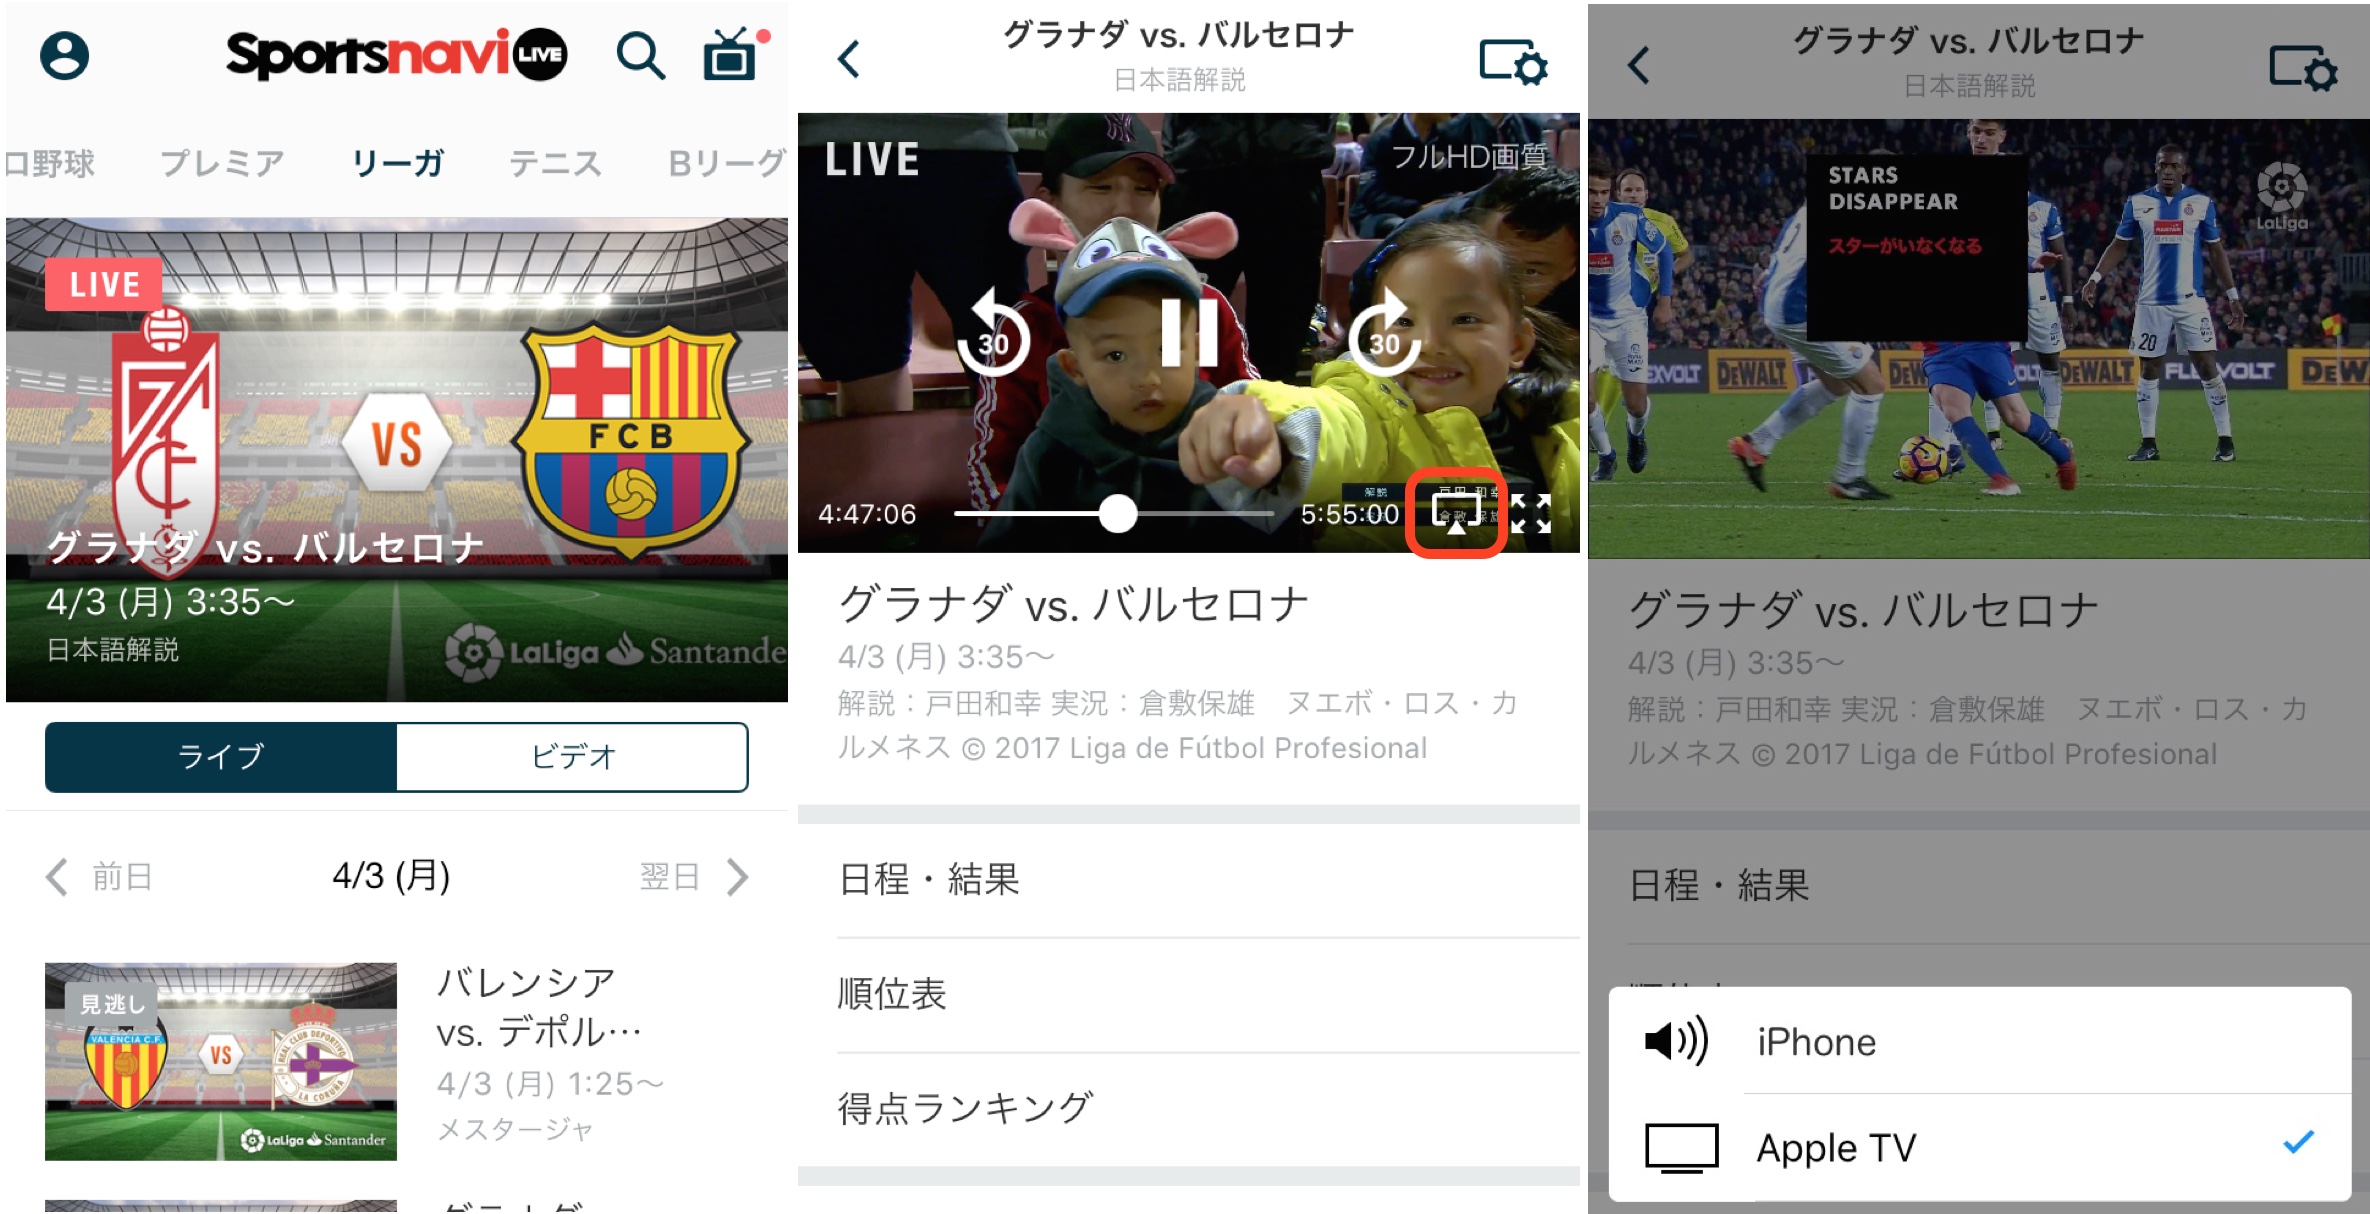 プレミアもリーガも見放題 スポナビライブ攻略法 Iphoneユーザーはapple Tvを使ったテレビ視聴に注目 サッカーキング